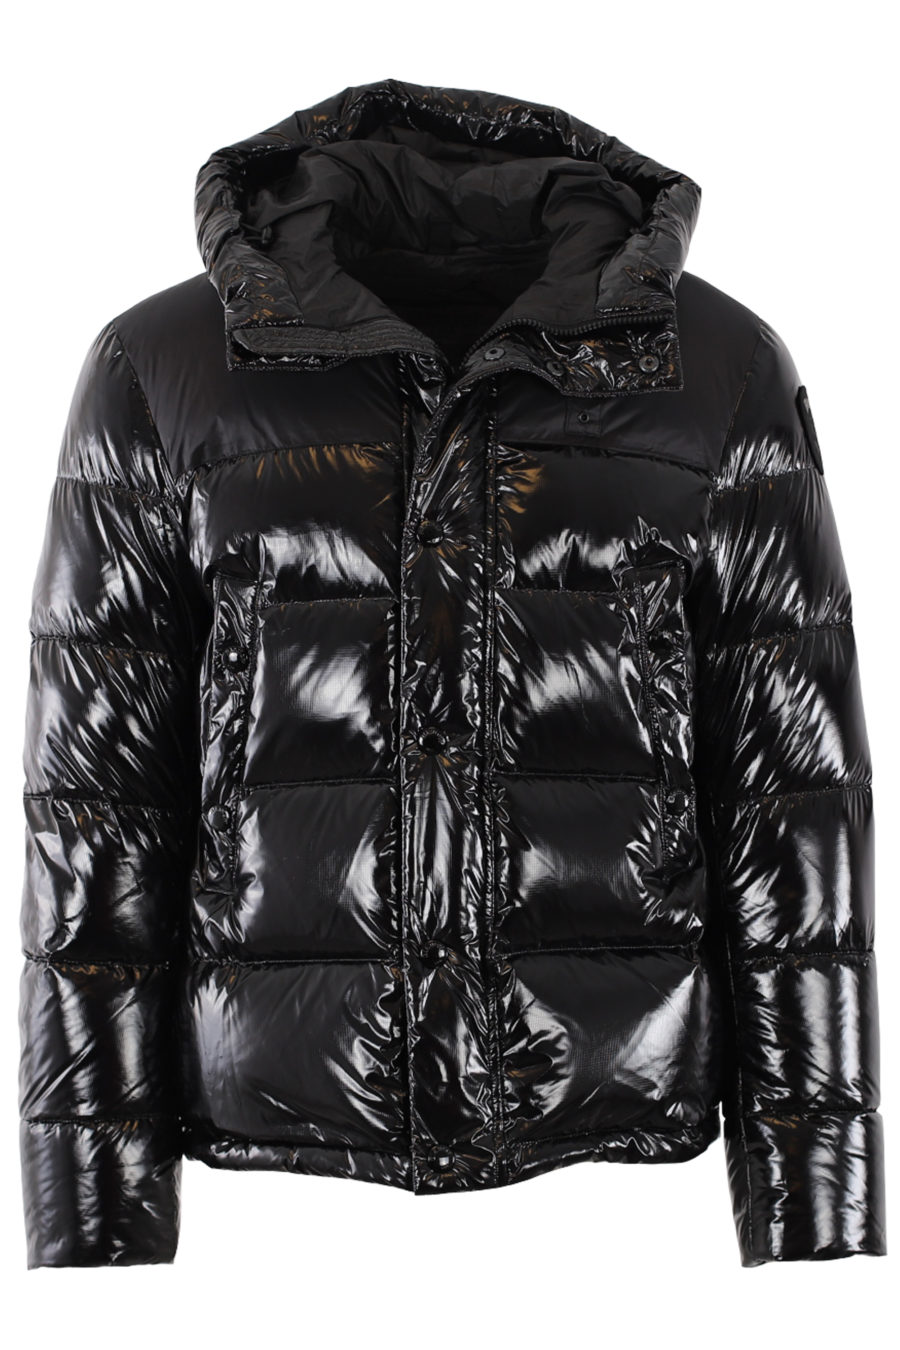 Black shiny jacket - IMG 0492